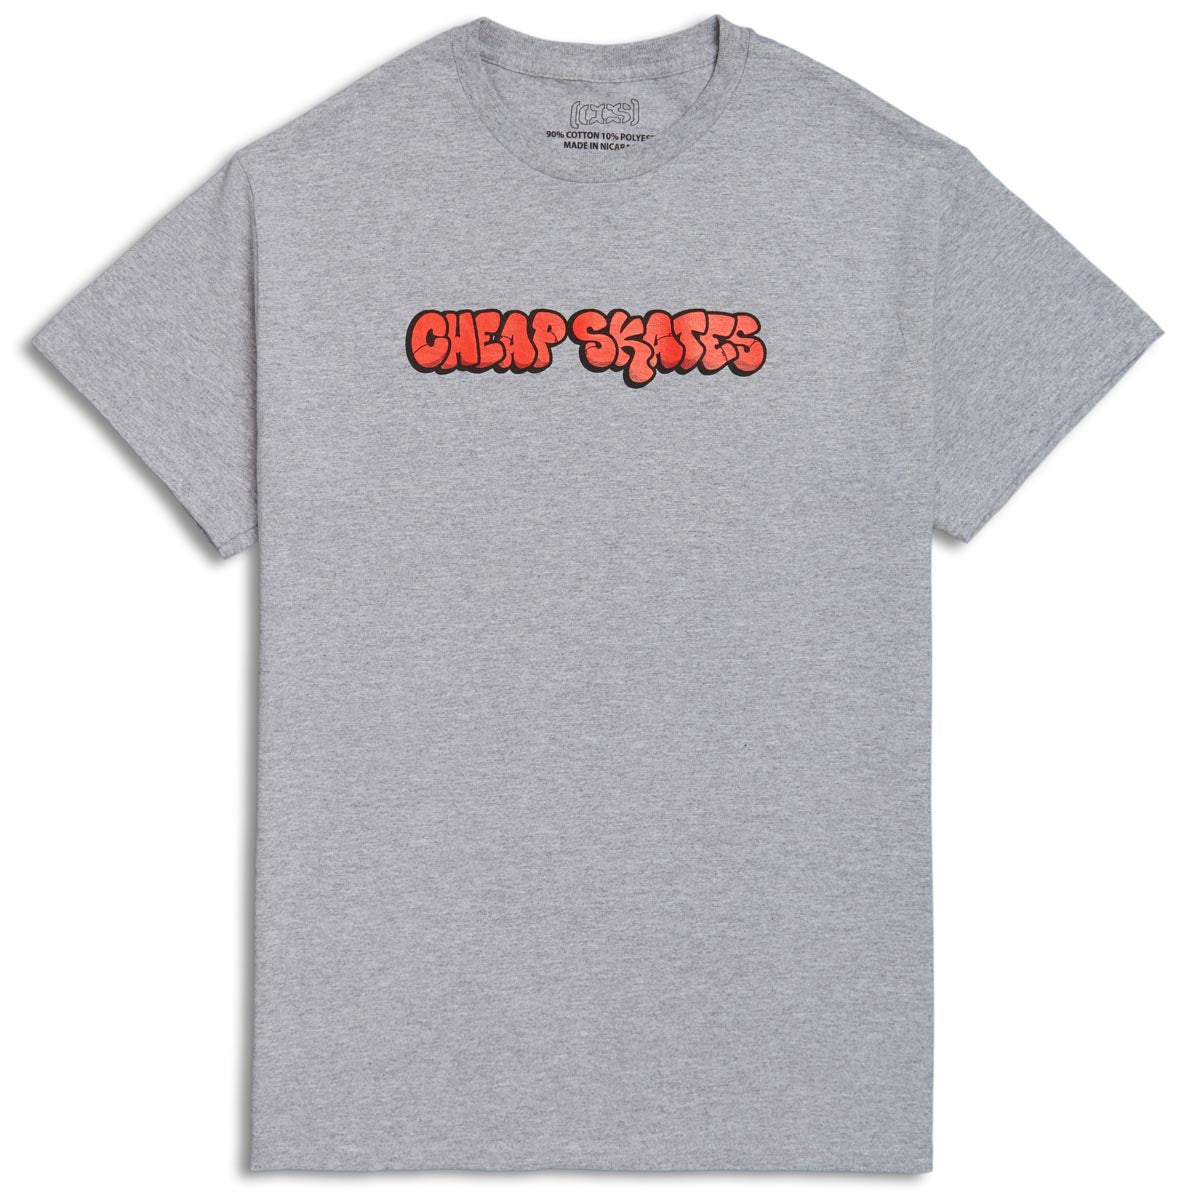 CCS Cheap Skates Tag T-Shirt - Grey/Red/Black image 1